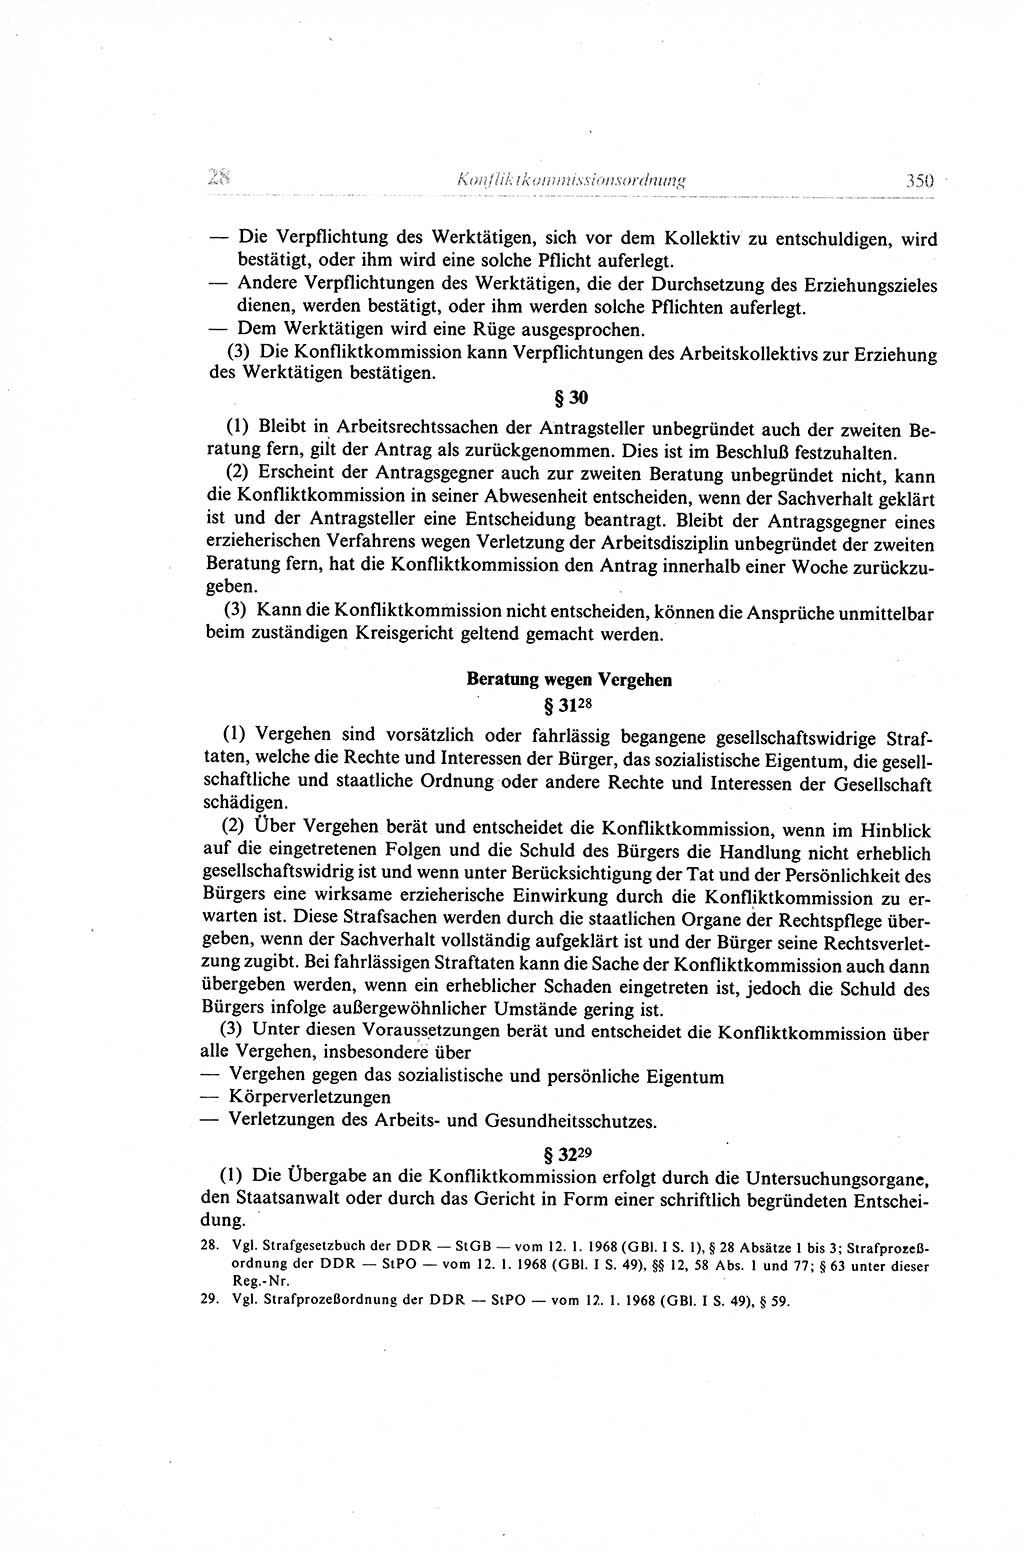 Gesetzbuch der Arbeit (GBA) und andere ausgewählte rechtliche Bestimmungen [Deutsche Demokratische Republik (DDR)] 1968, Seite 350 (GBA DDR 1968, S. 350)